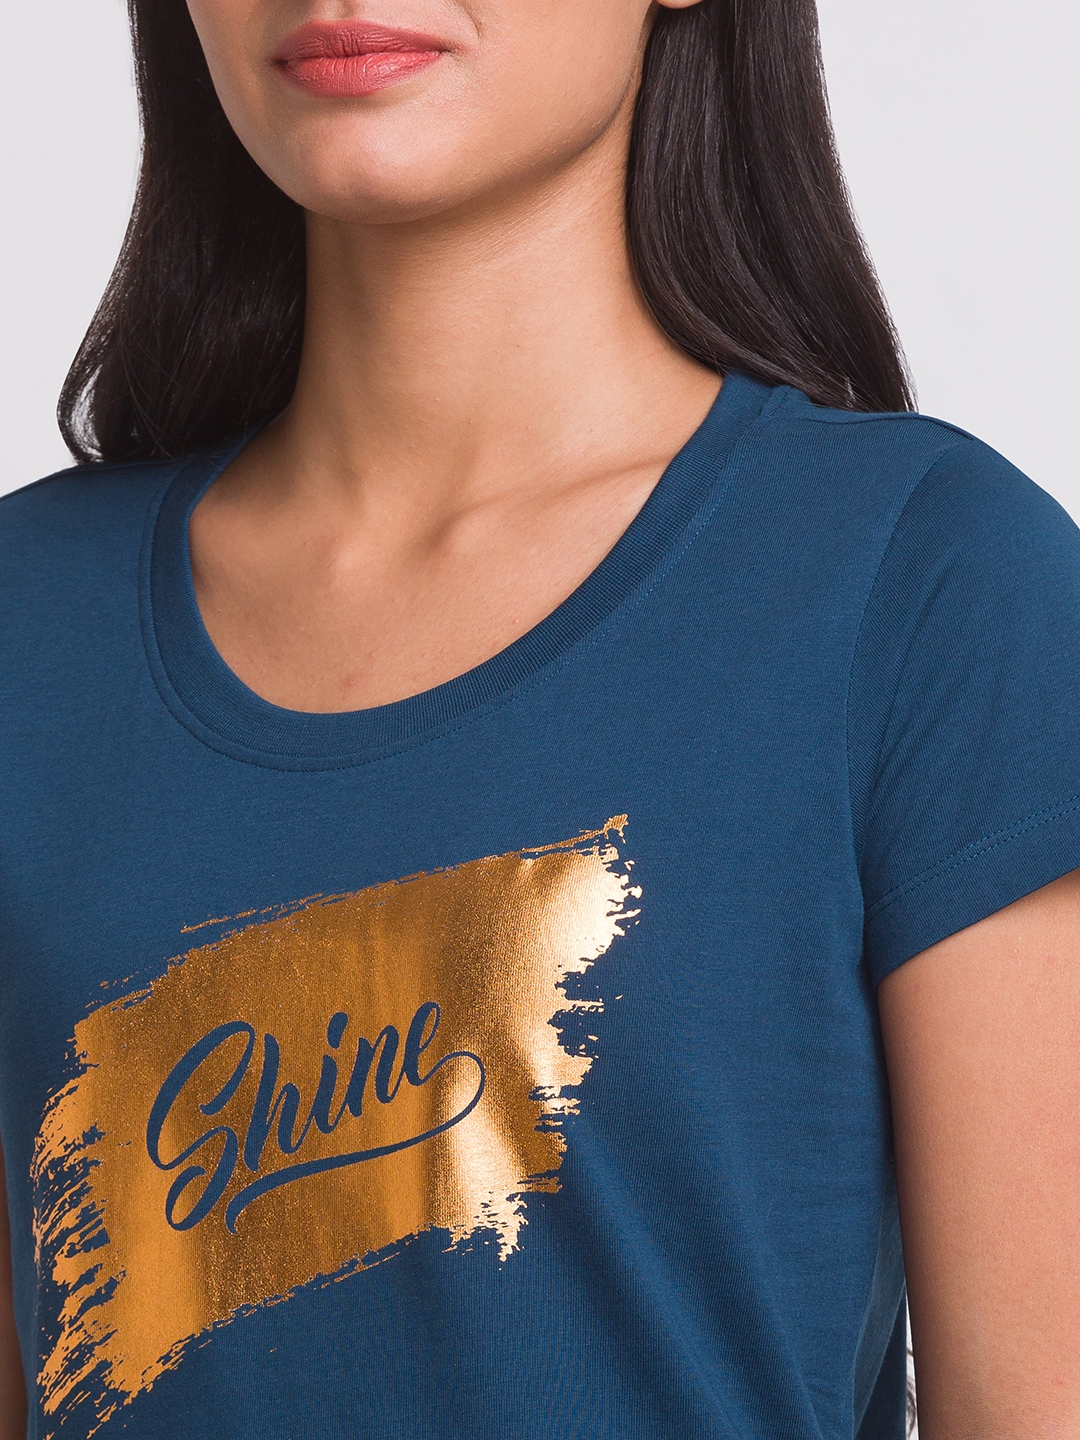 globus | Globus Teal Printed Tshirt 4